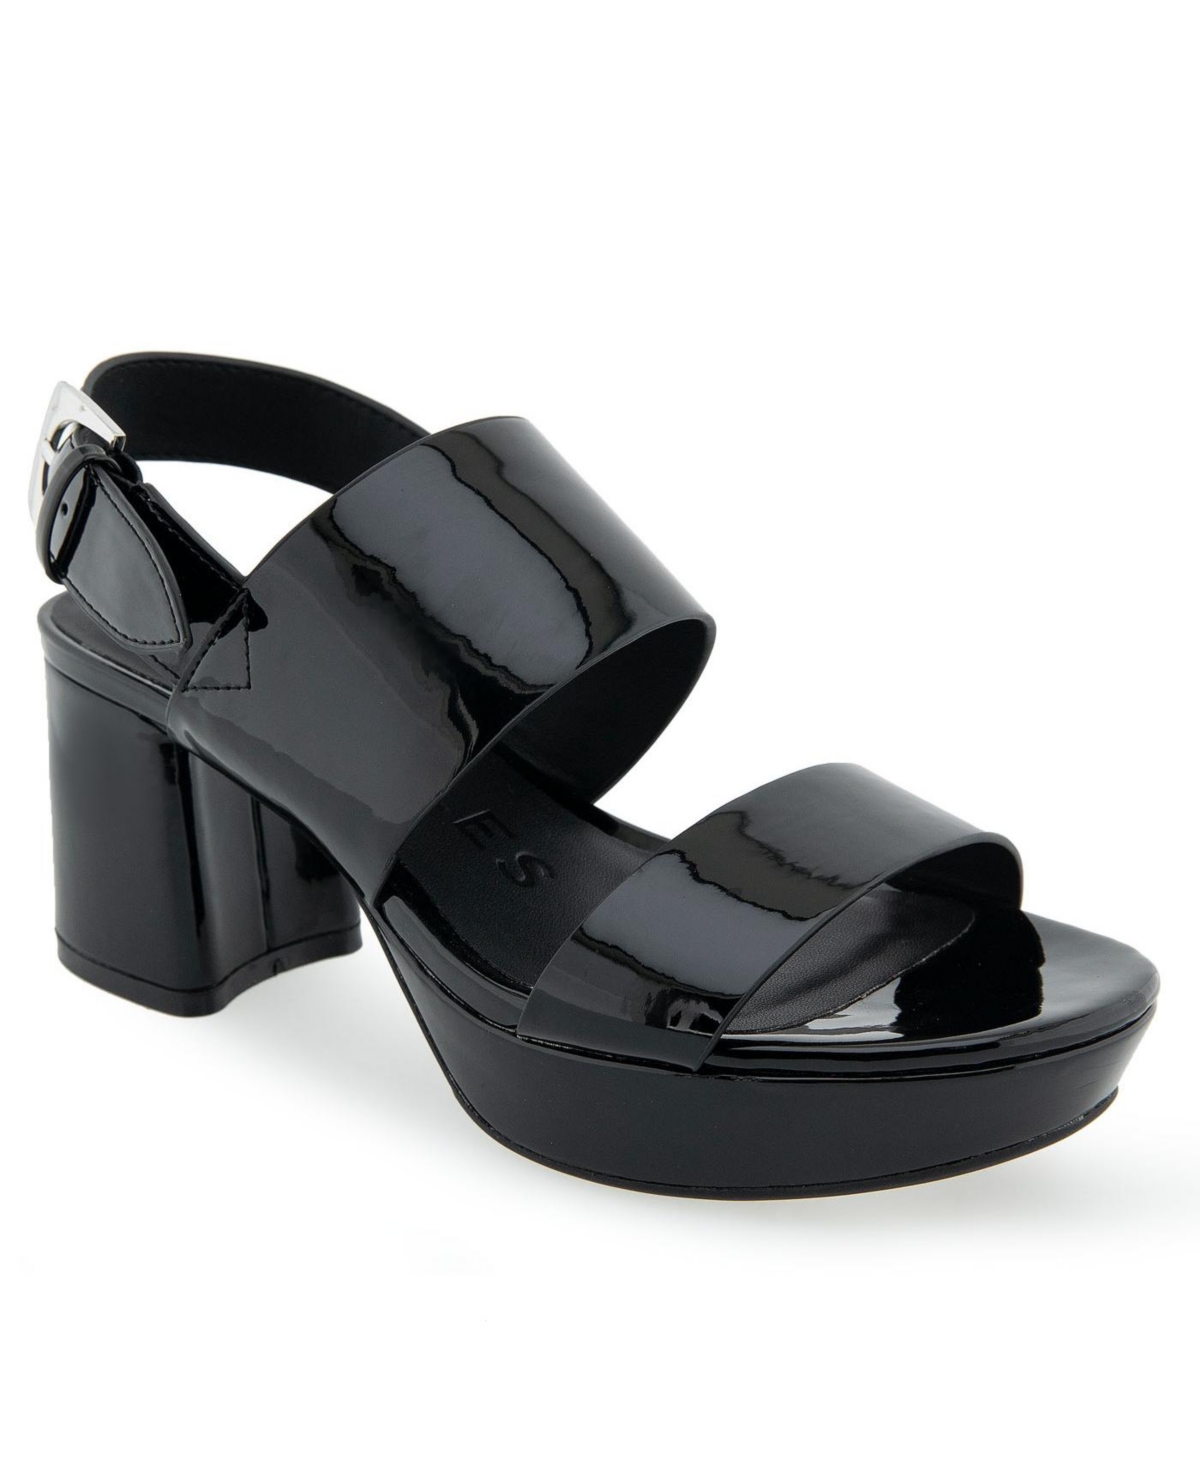 Aerosoles Women's Camilia Pump Heel Sandals In Black Patent